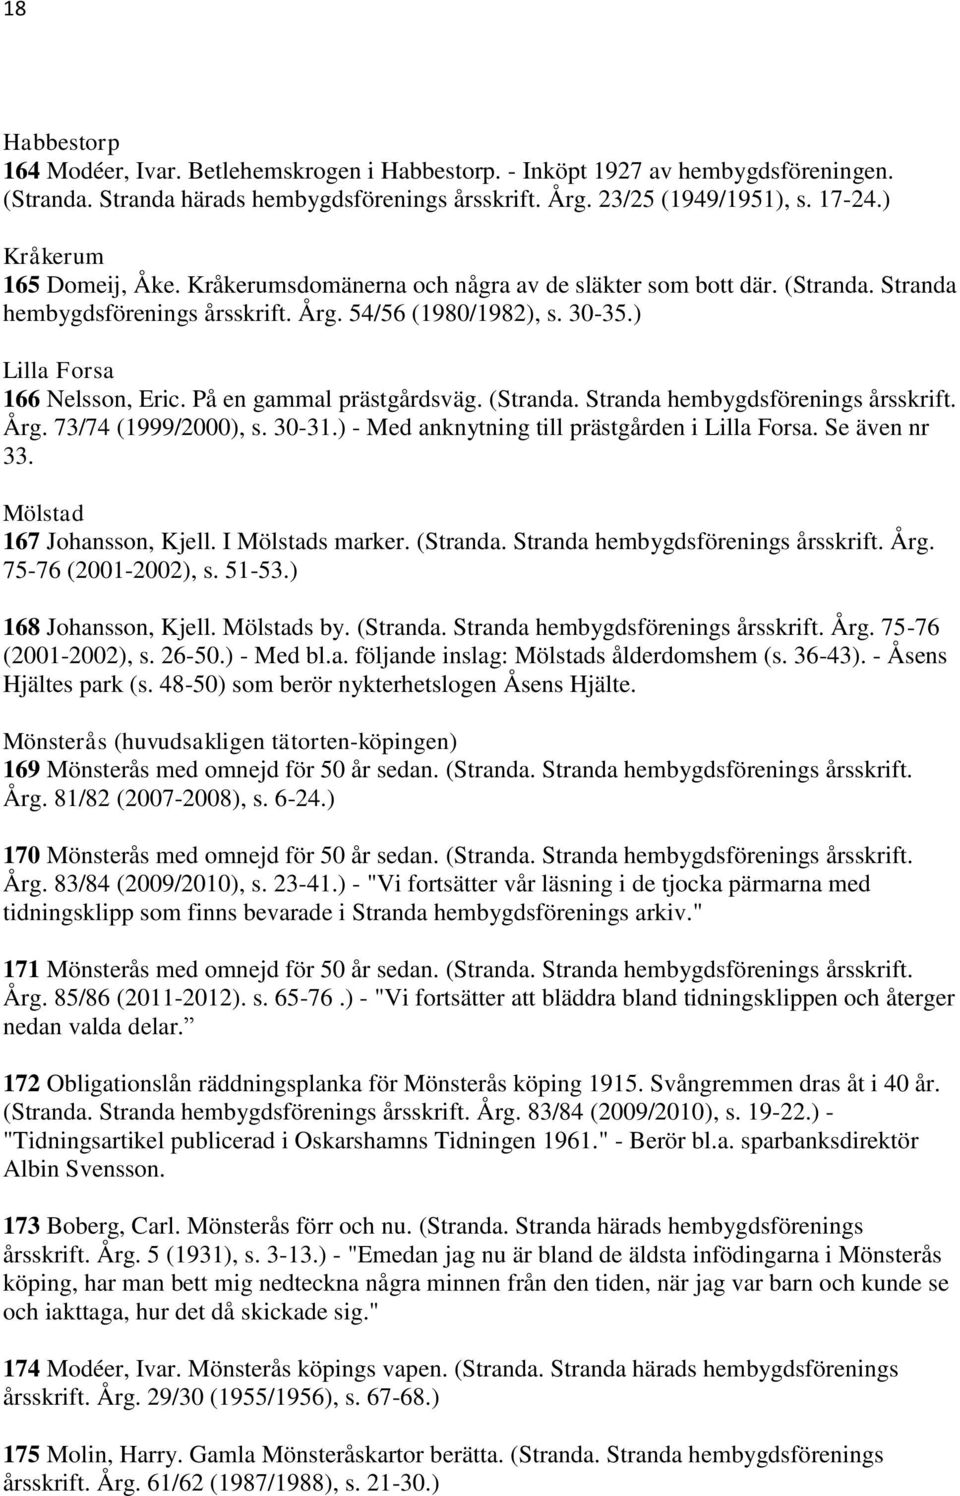 På en gammal prästgårdsväg. (Stranda. Stranda hembygdsförenings årsskrift. Årg. 73/74 (1999/2000), s. 30-31.) - Med anknytning till prästgården i Lilla Forsa. Se även nr 33.